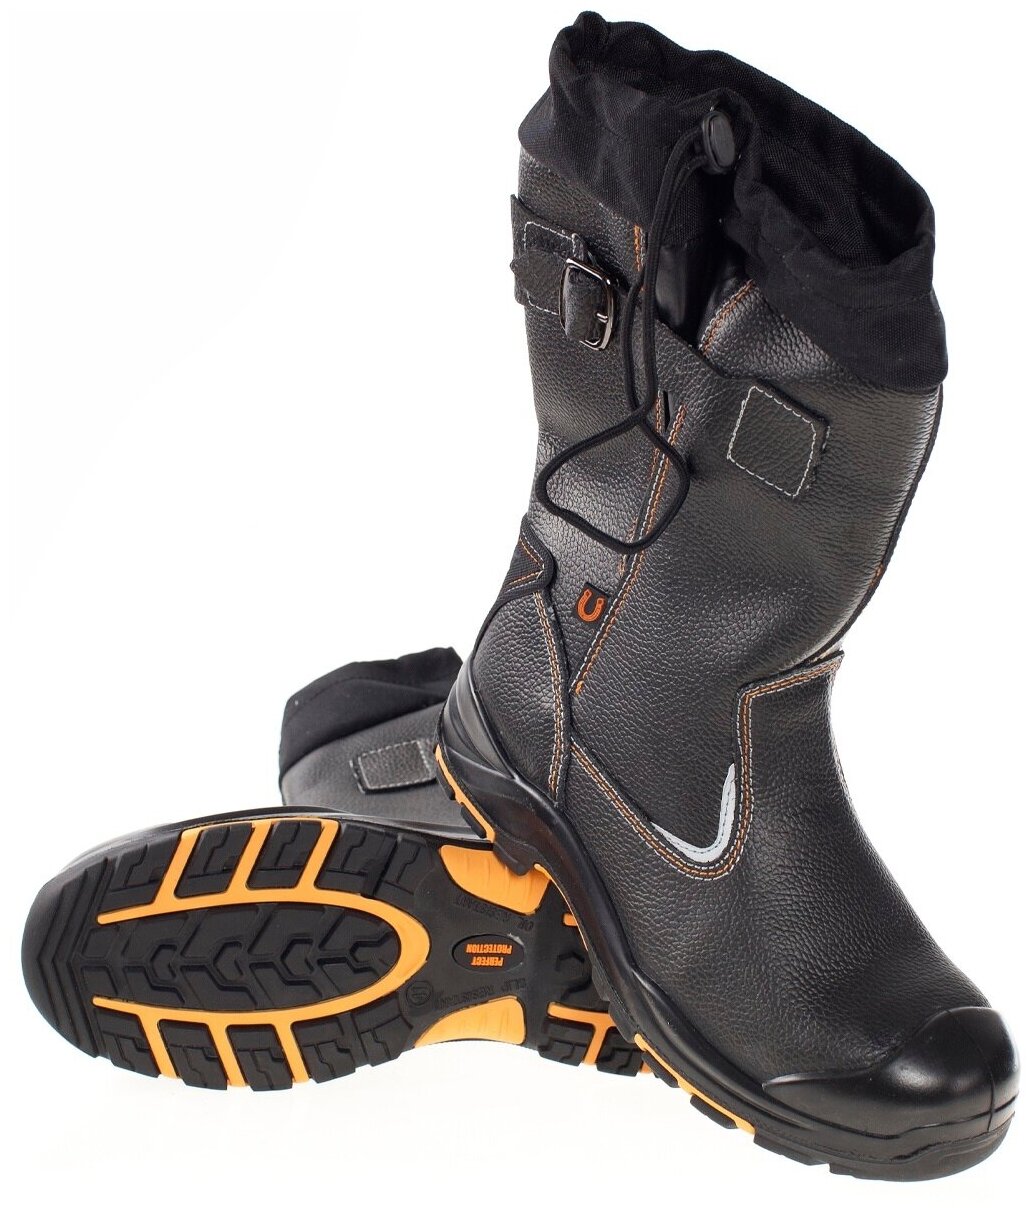 Сапоги PERFECT protection-кевлар подошва ПУ-нитрил. Тип обуви: Сапоги. Размер:44